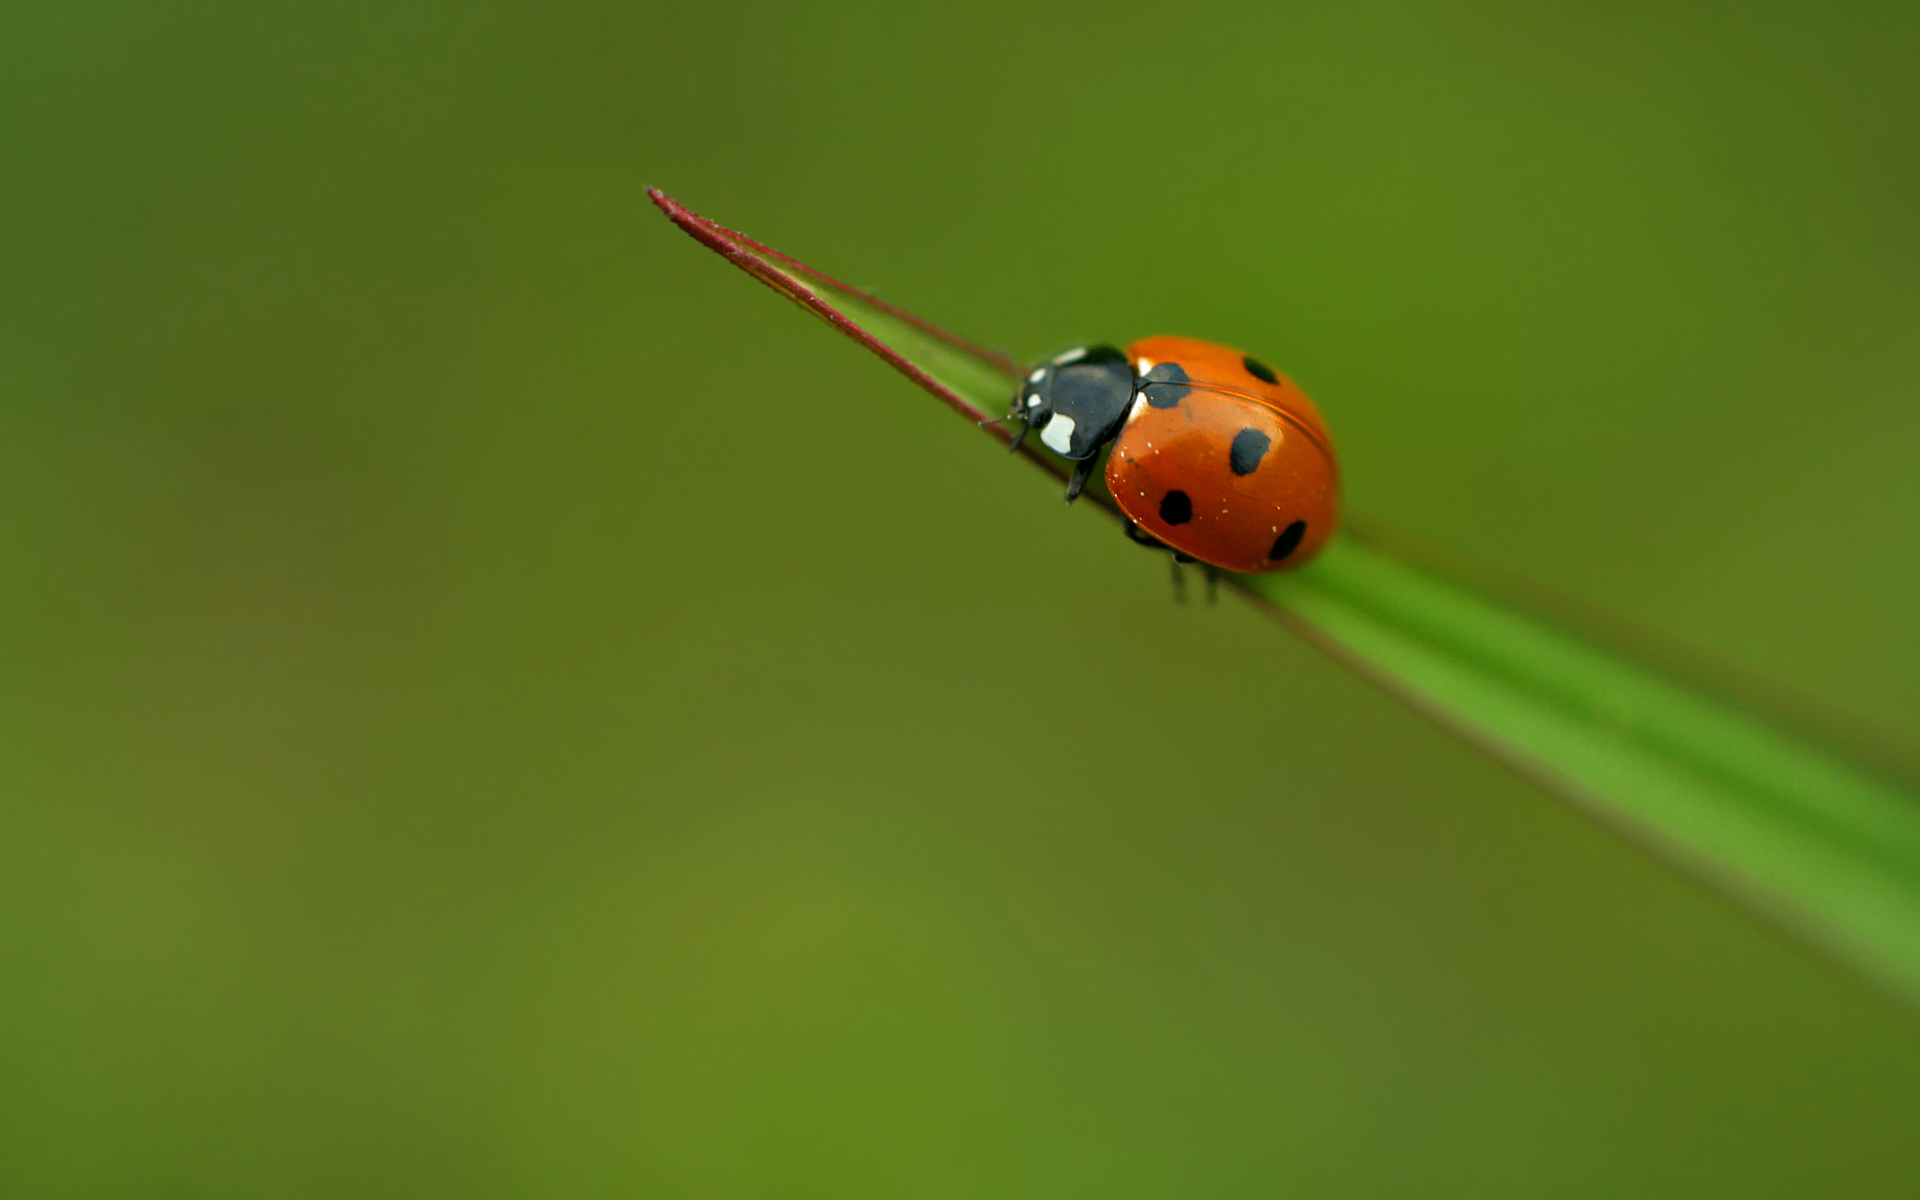 Little Ladybug Wallpaper For Desktop Wallpaperlepi